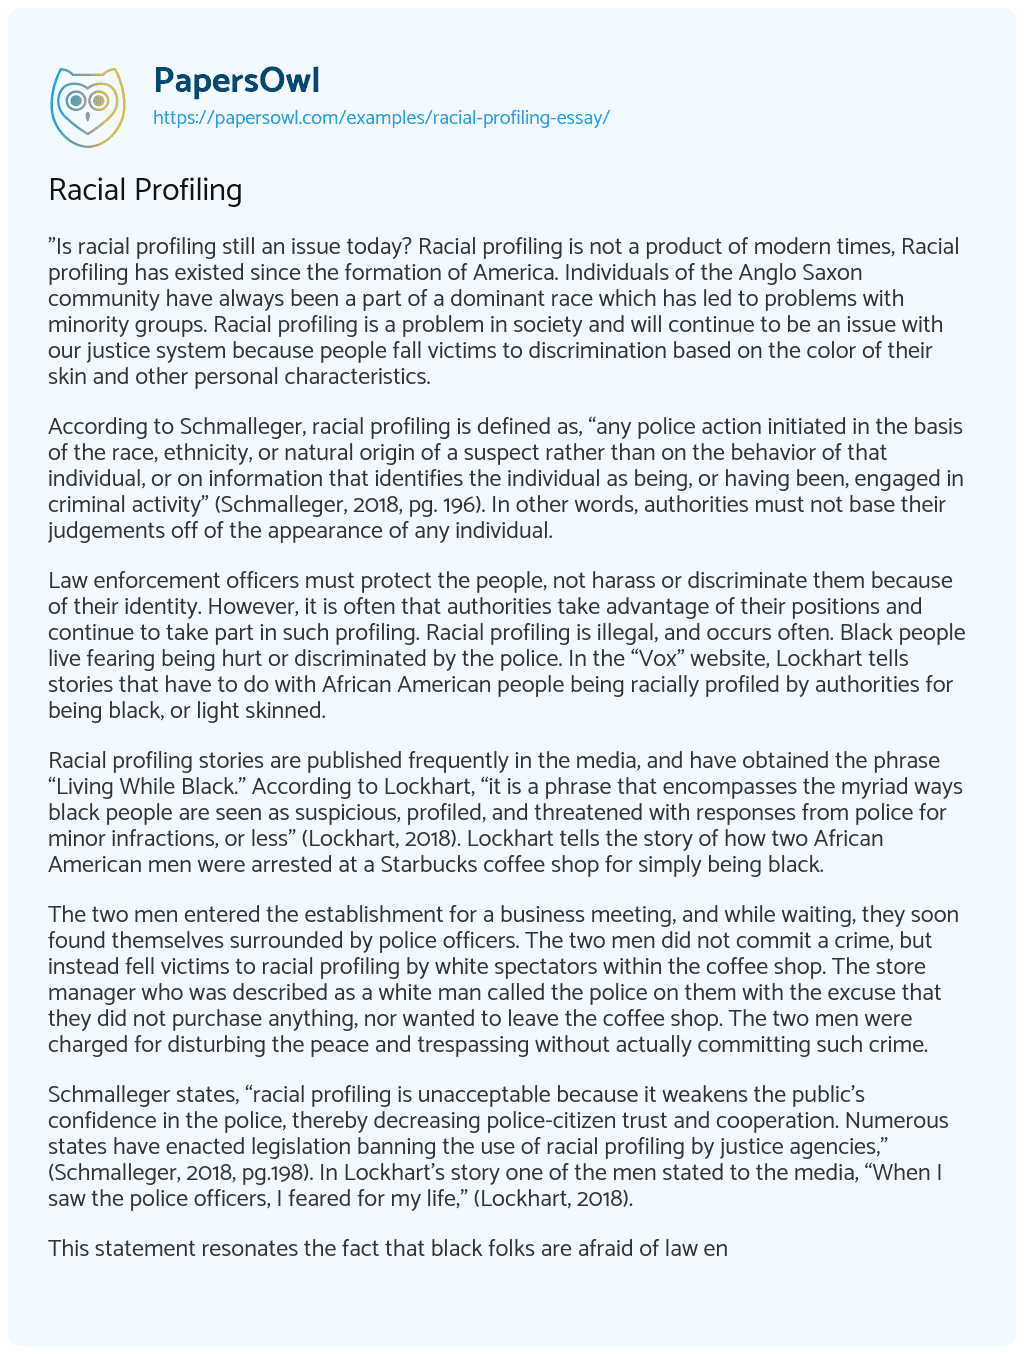 Racial Profiling essay